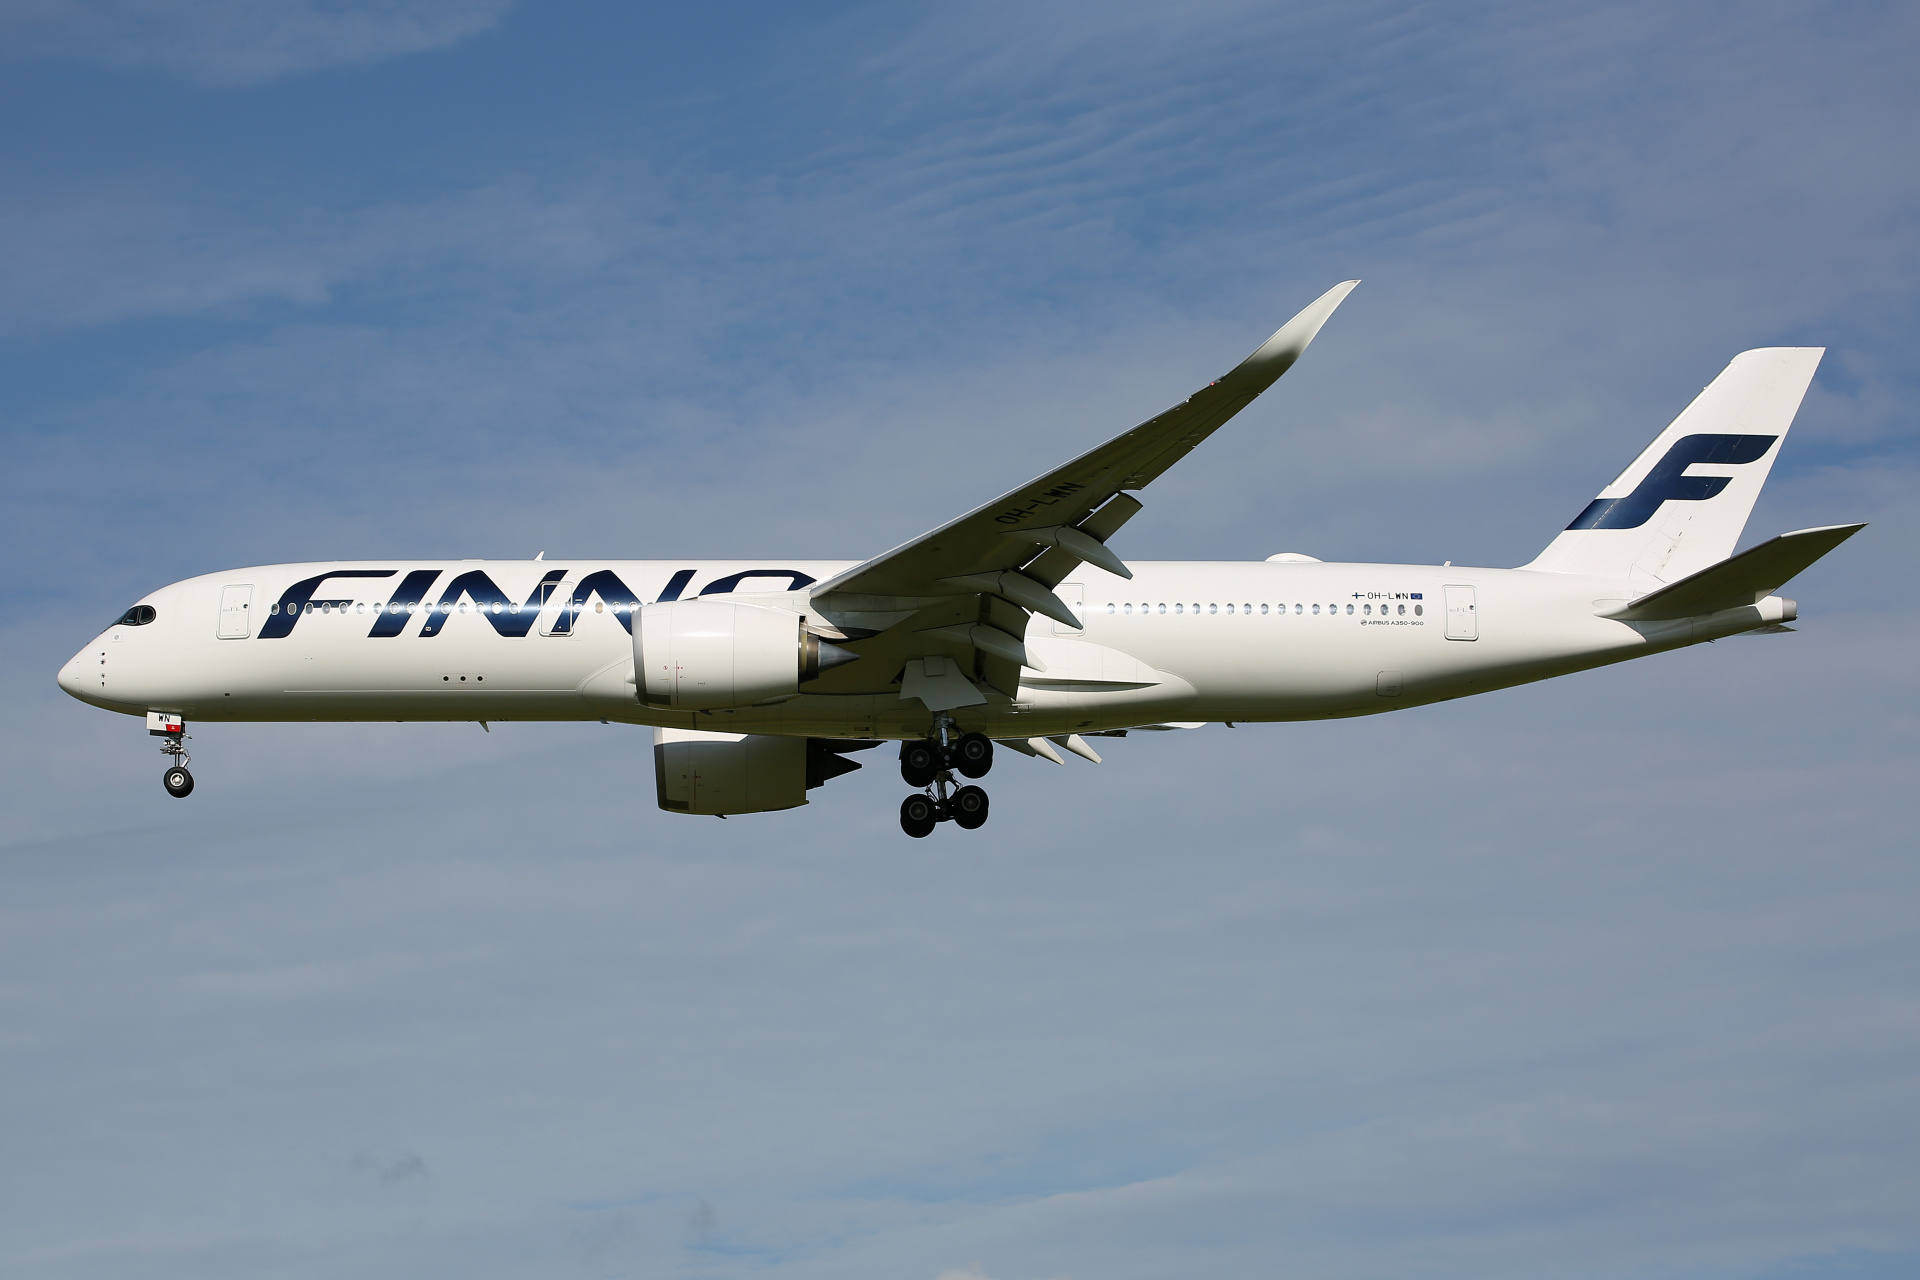 OH-LWN, Finnair (Aircraft » Schiphol Spotting » Airbus A350-900 » Finnair)